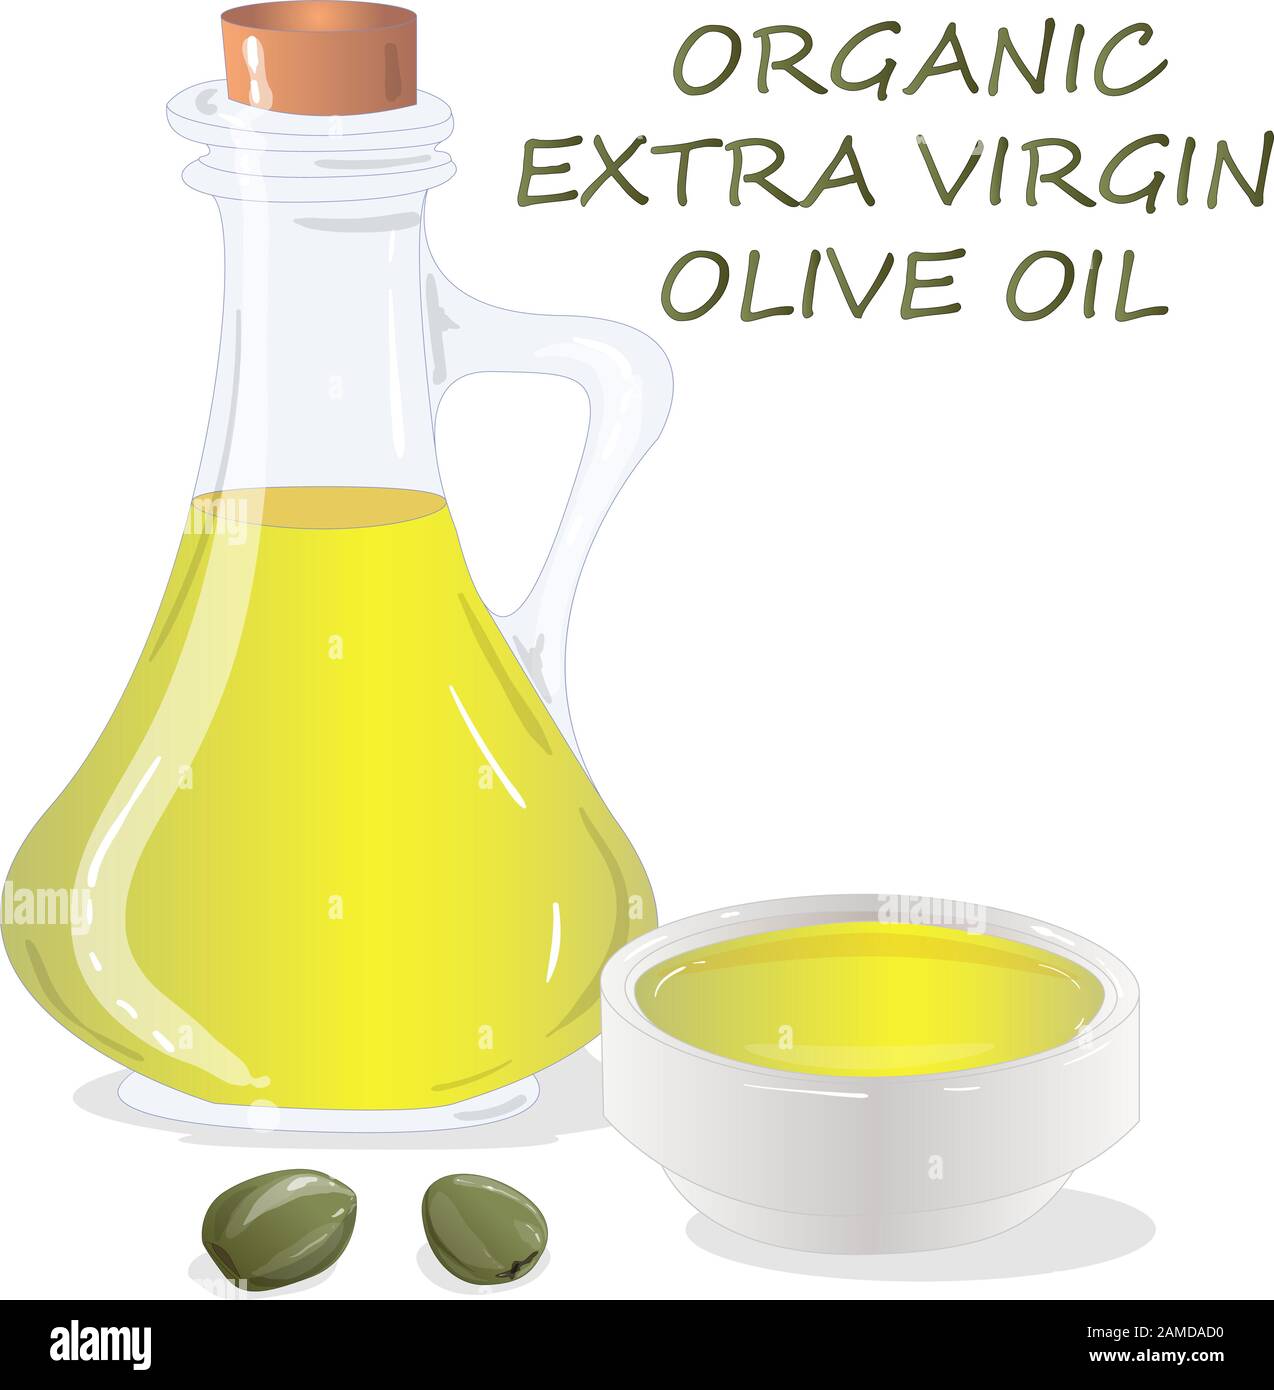 Huile d'olive vierge de qualité supérieure et quelques olives isolées sur fond blanc. Illustration vectorielle réalisée à la main. Illustration de Vecteur